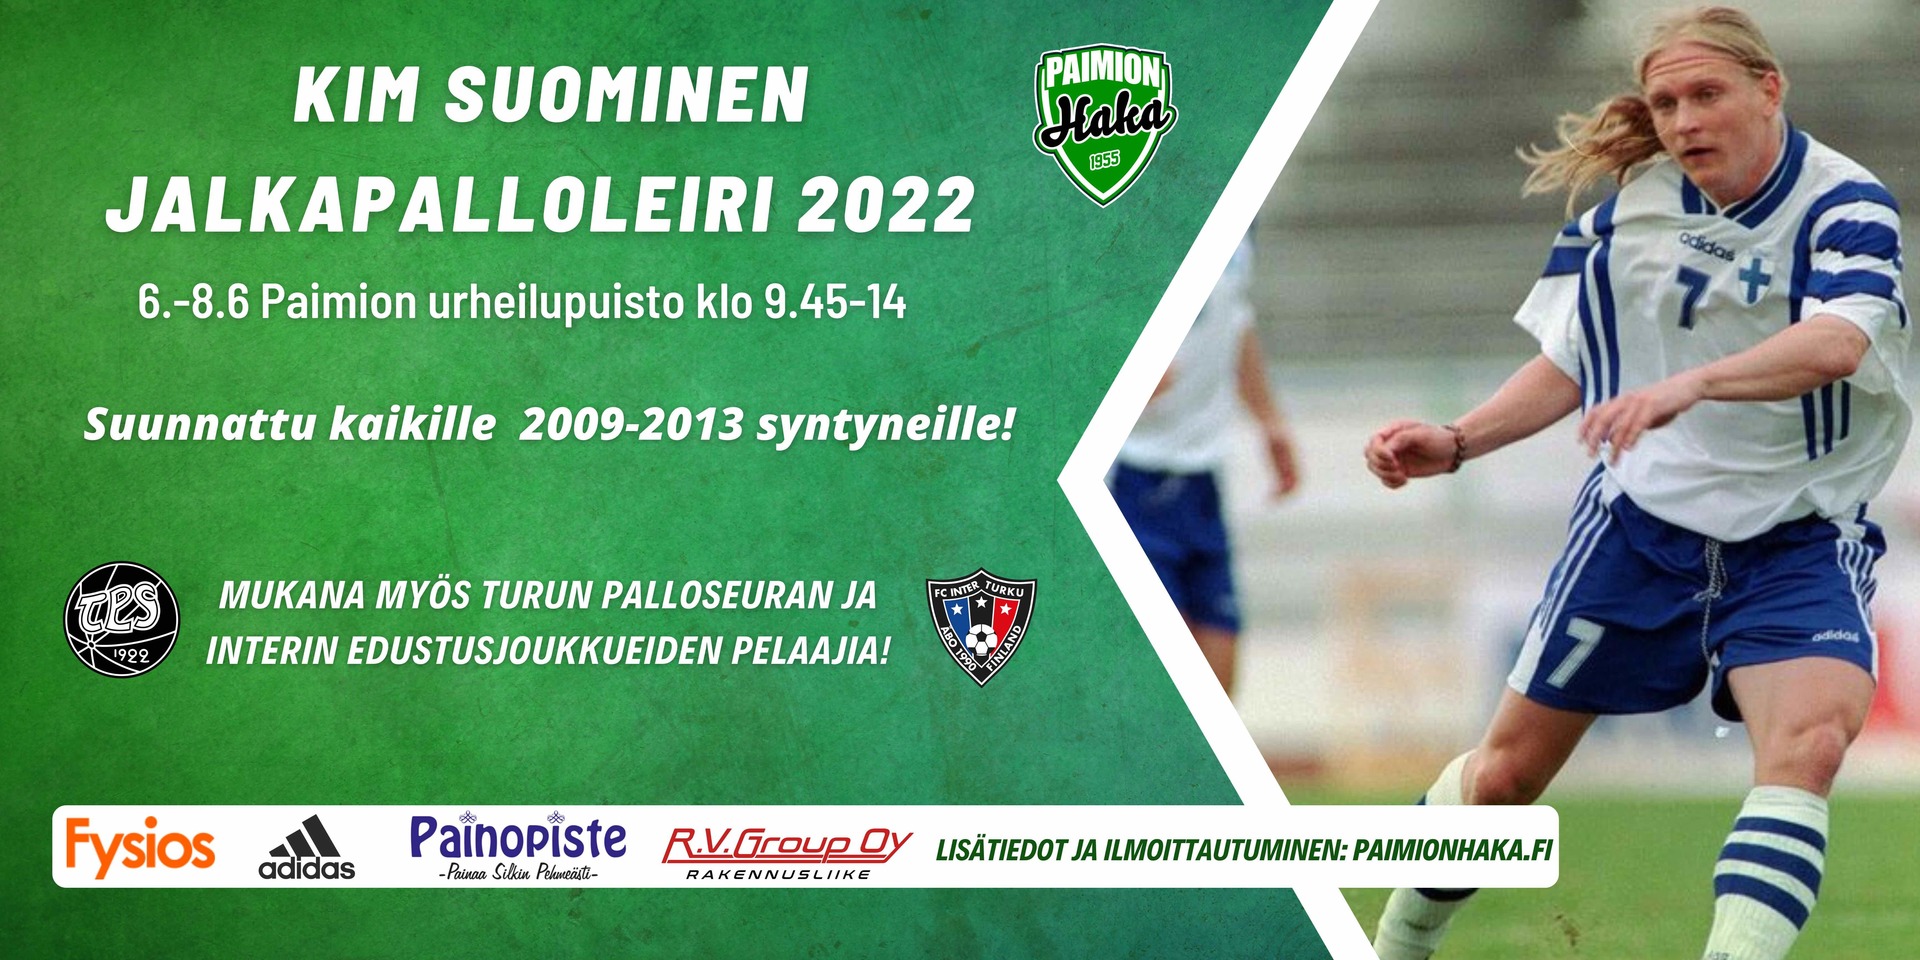 Kim Suominen Jalkapalloleiri 2022